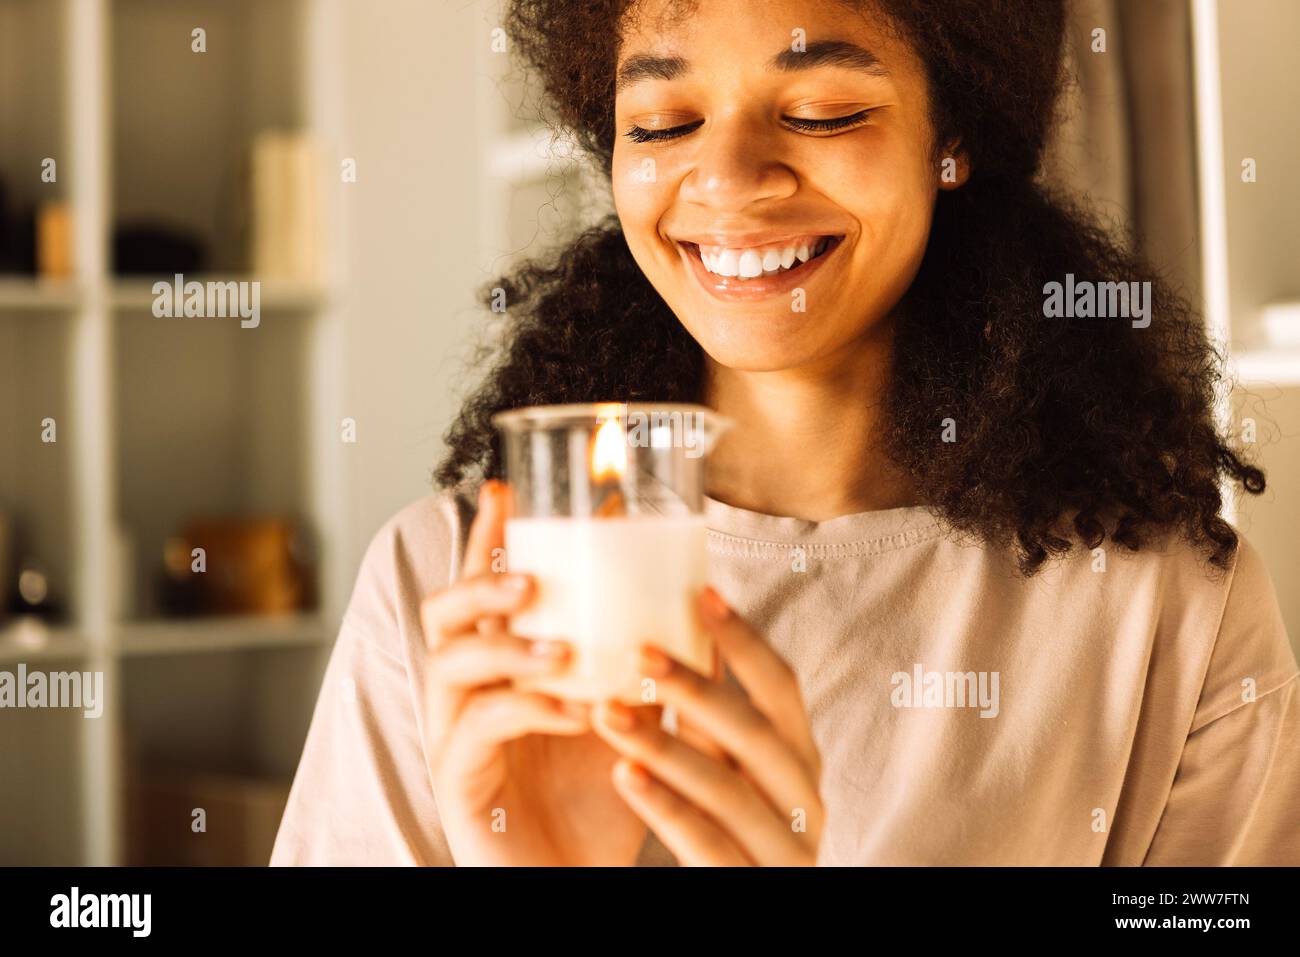 Nahaufnahme eines charmanten Teenagers, der eine Kerze in einem Glaskerzenleuchter hält und lacht. Ein hübsches afrikanisches Mädchen steht in einem stilvollen, hellen Ankleidezimmer Stockfoto